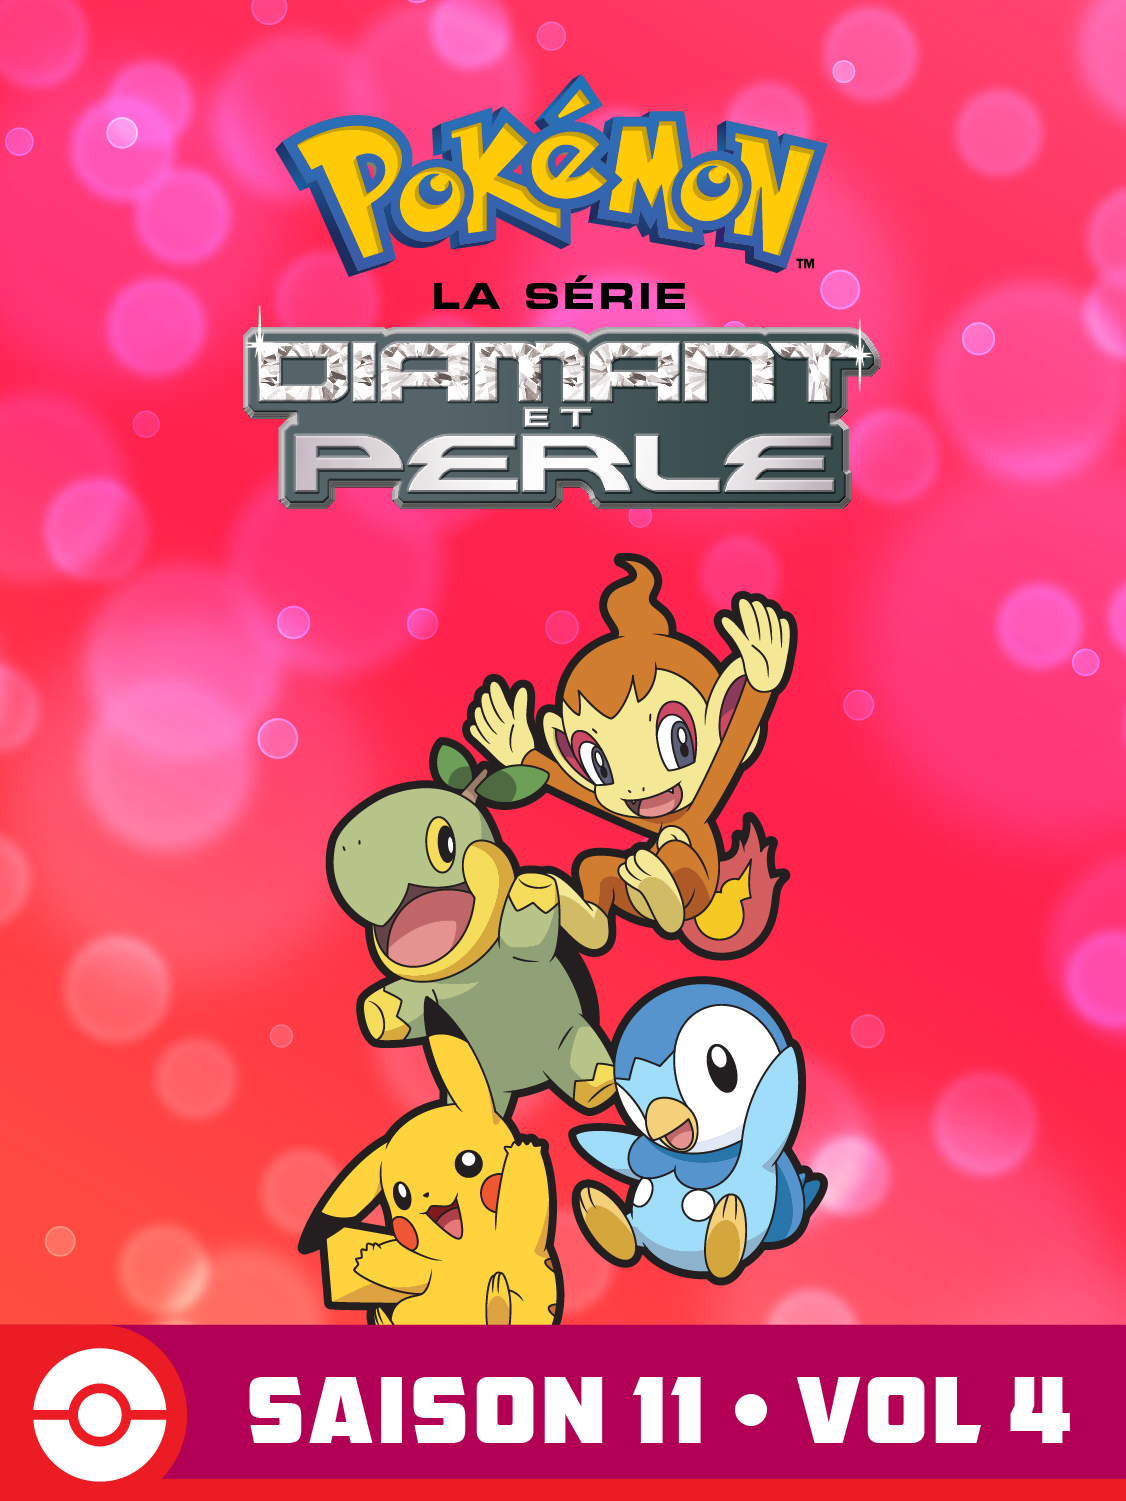  DP Battle Dimension Volume 4 Saison 11 de Pokémon la Série - 2010 